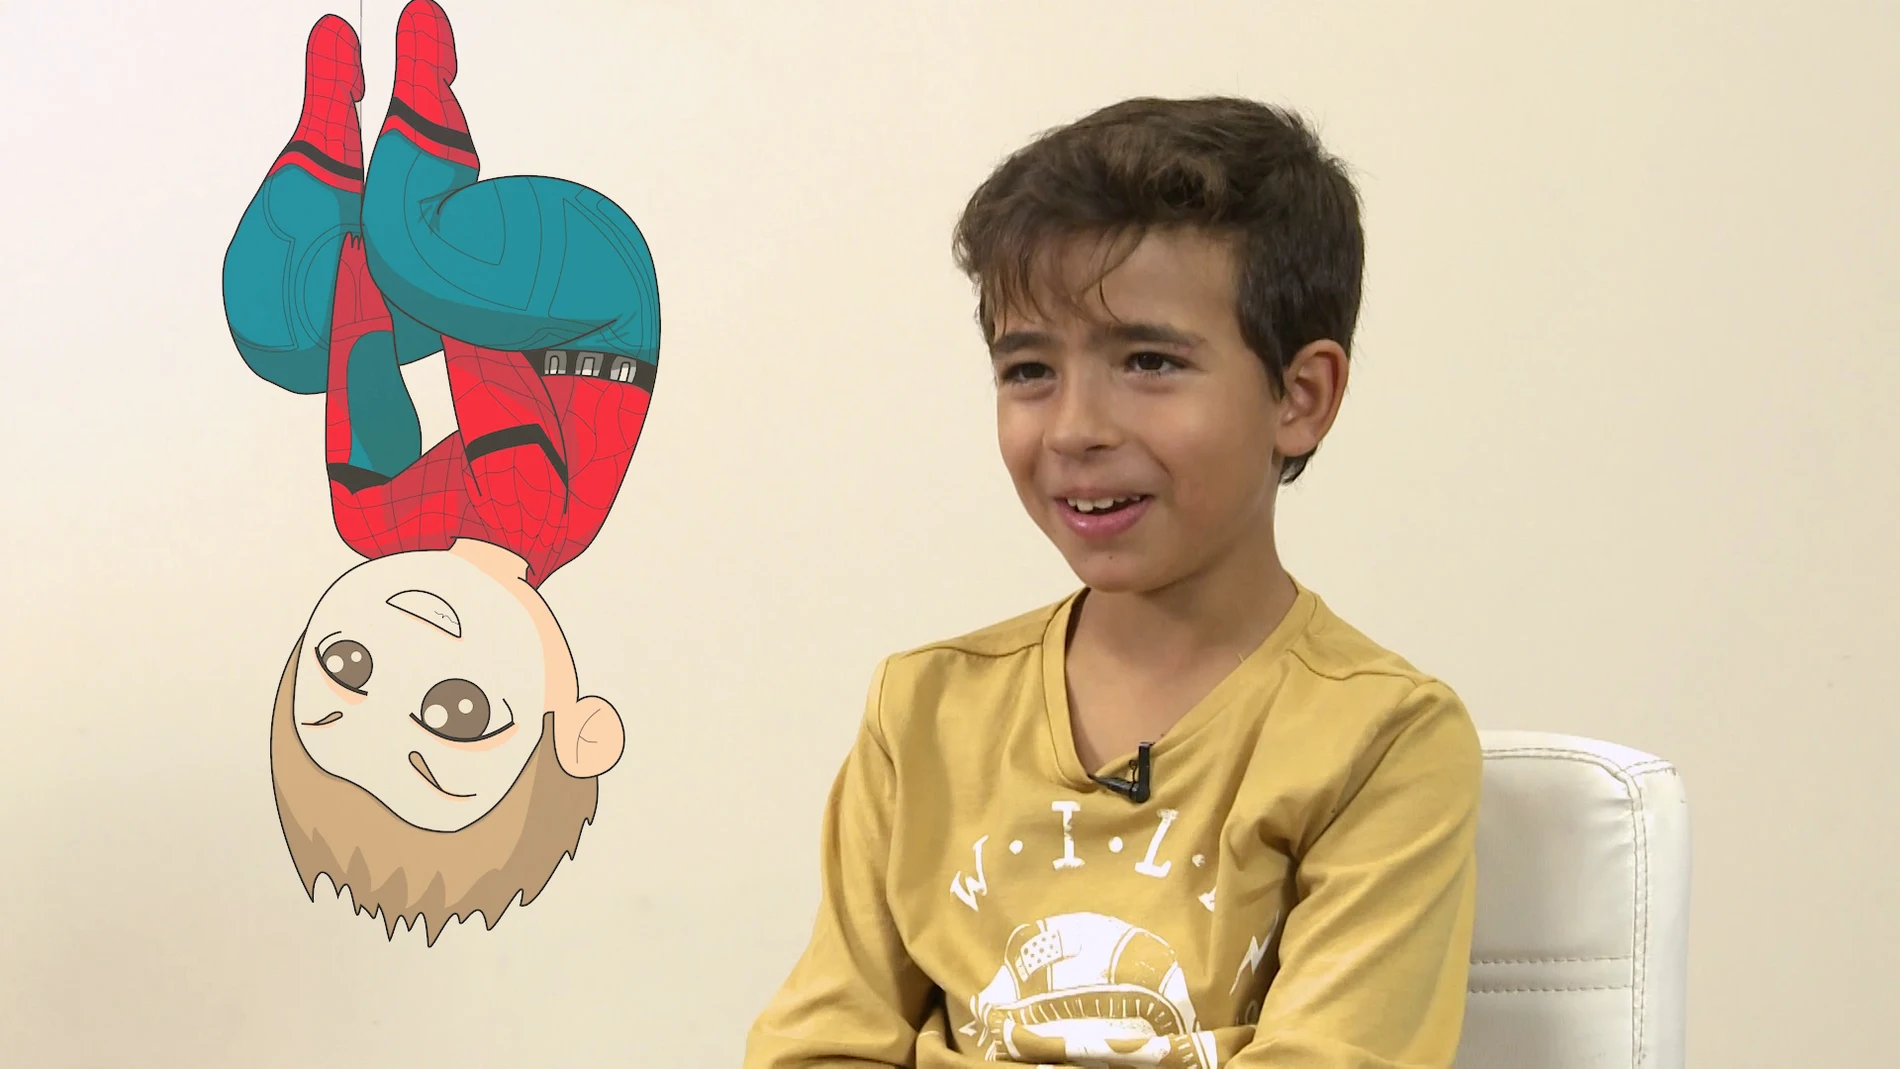 Los talents de 'La Voz Kids' eligen su superpoder: "Spiderman, volar o transmitir"